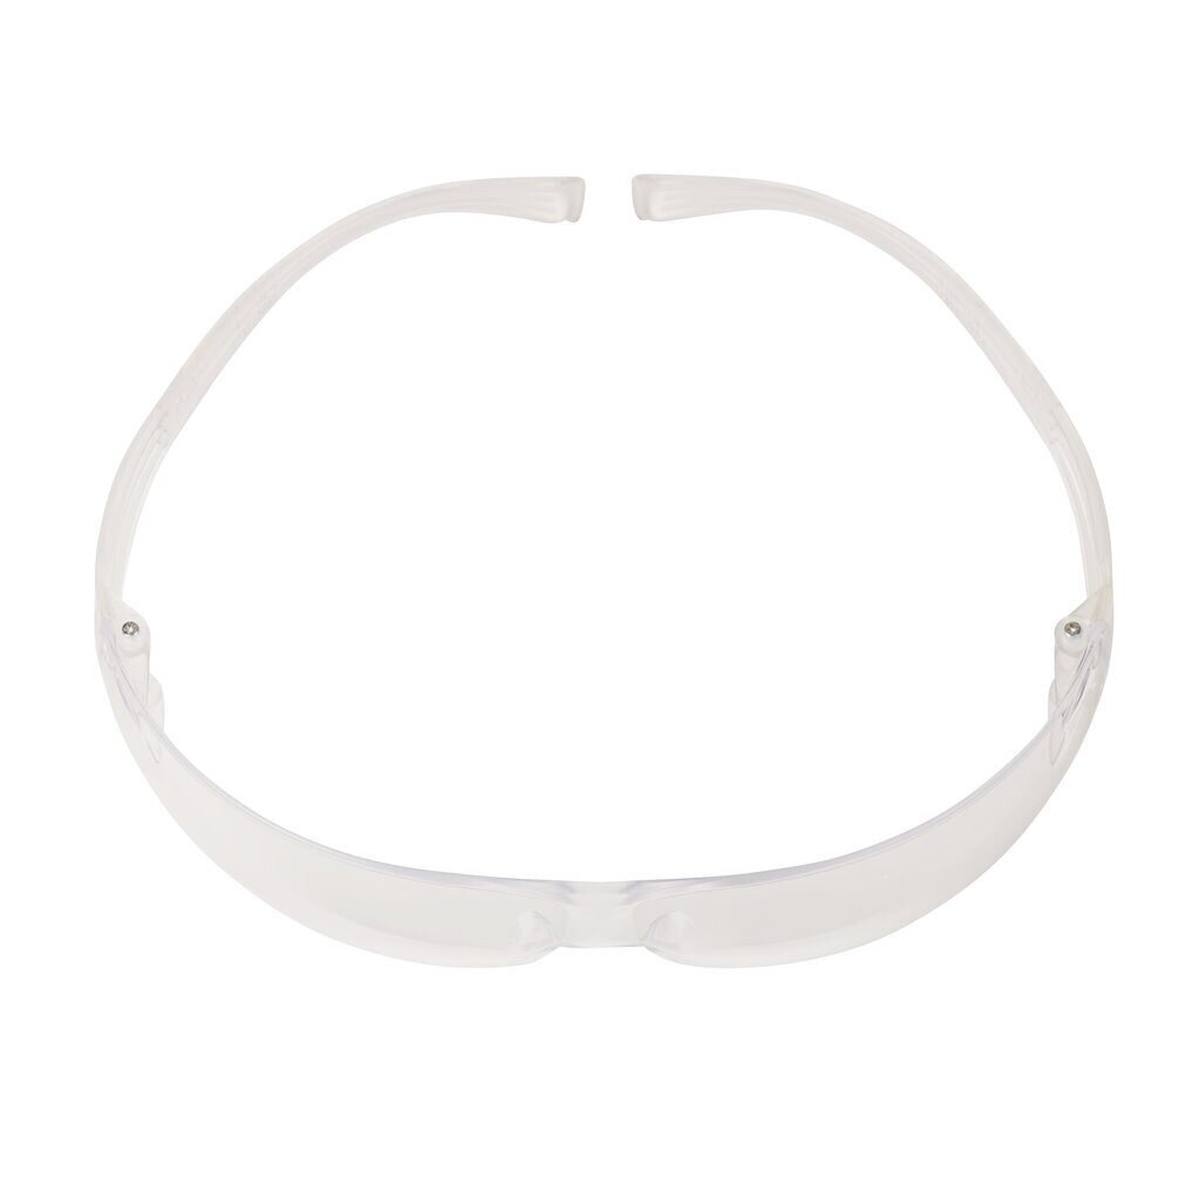 3M SecureFit 200 veiligheidsbril, anti-kras/anti-condens coating, helder glas, SF201AS/AF-E